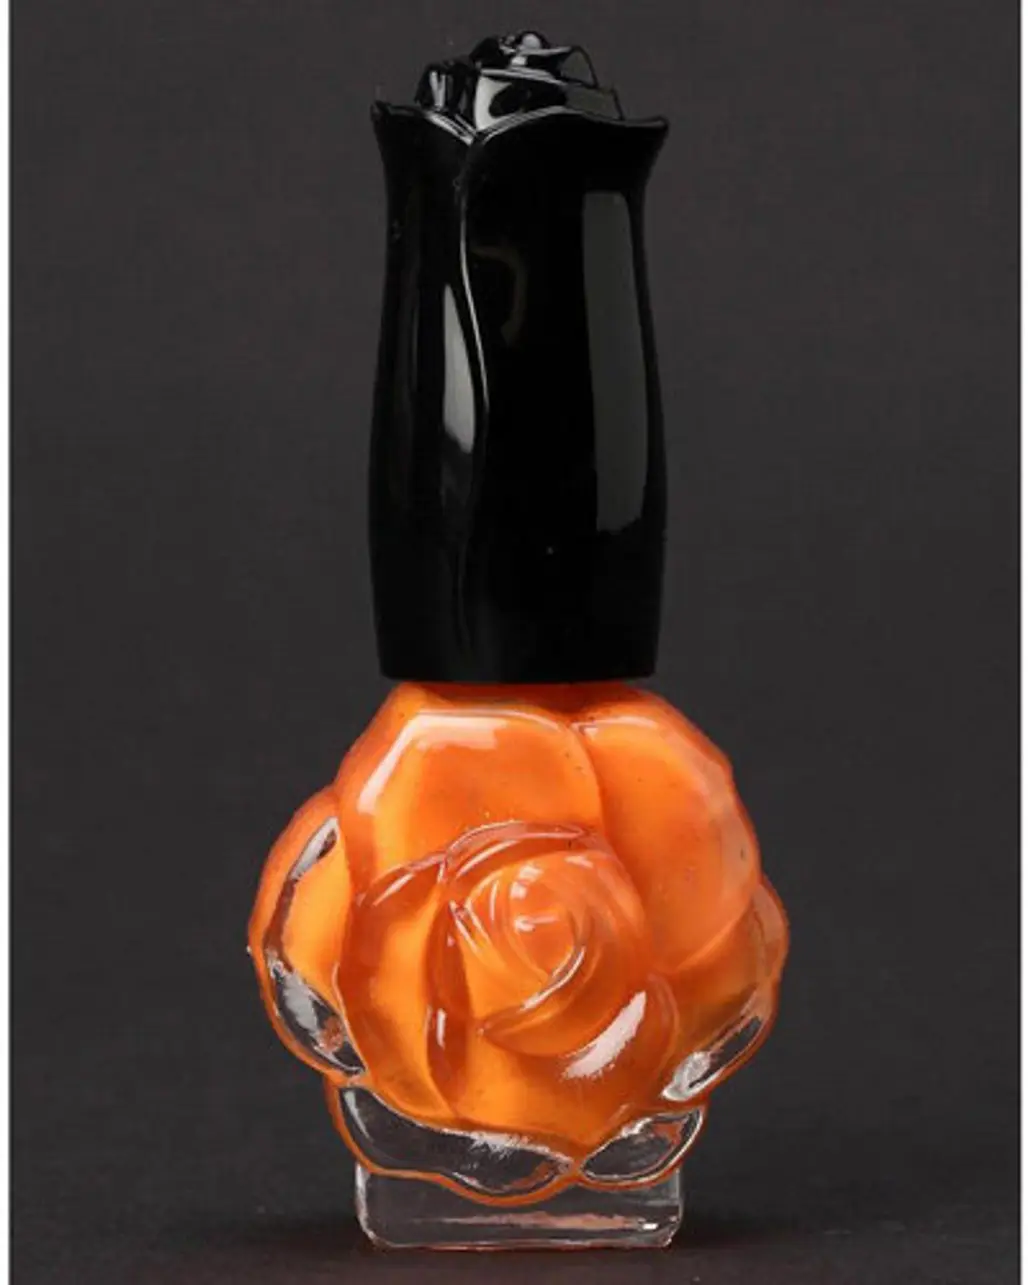 Anna Sui Shimmer Nail Polish in Orange